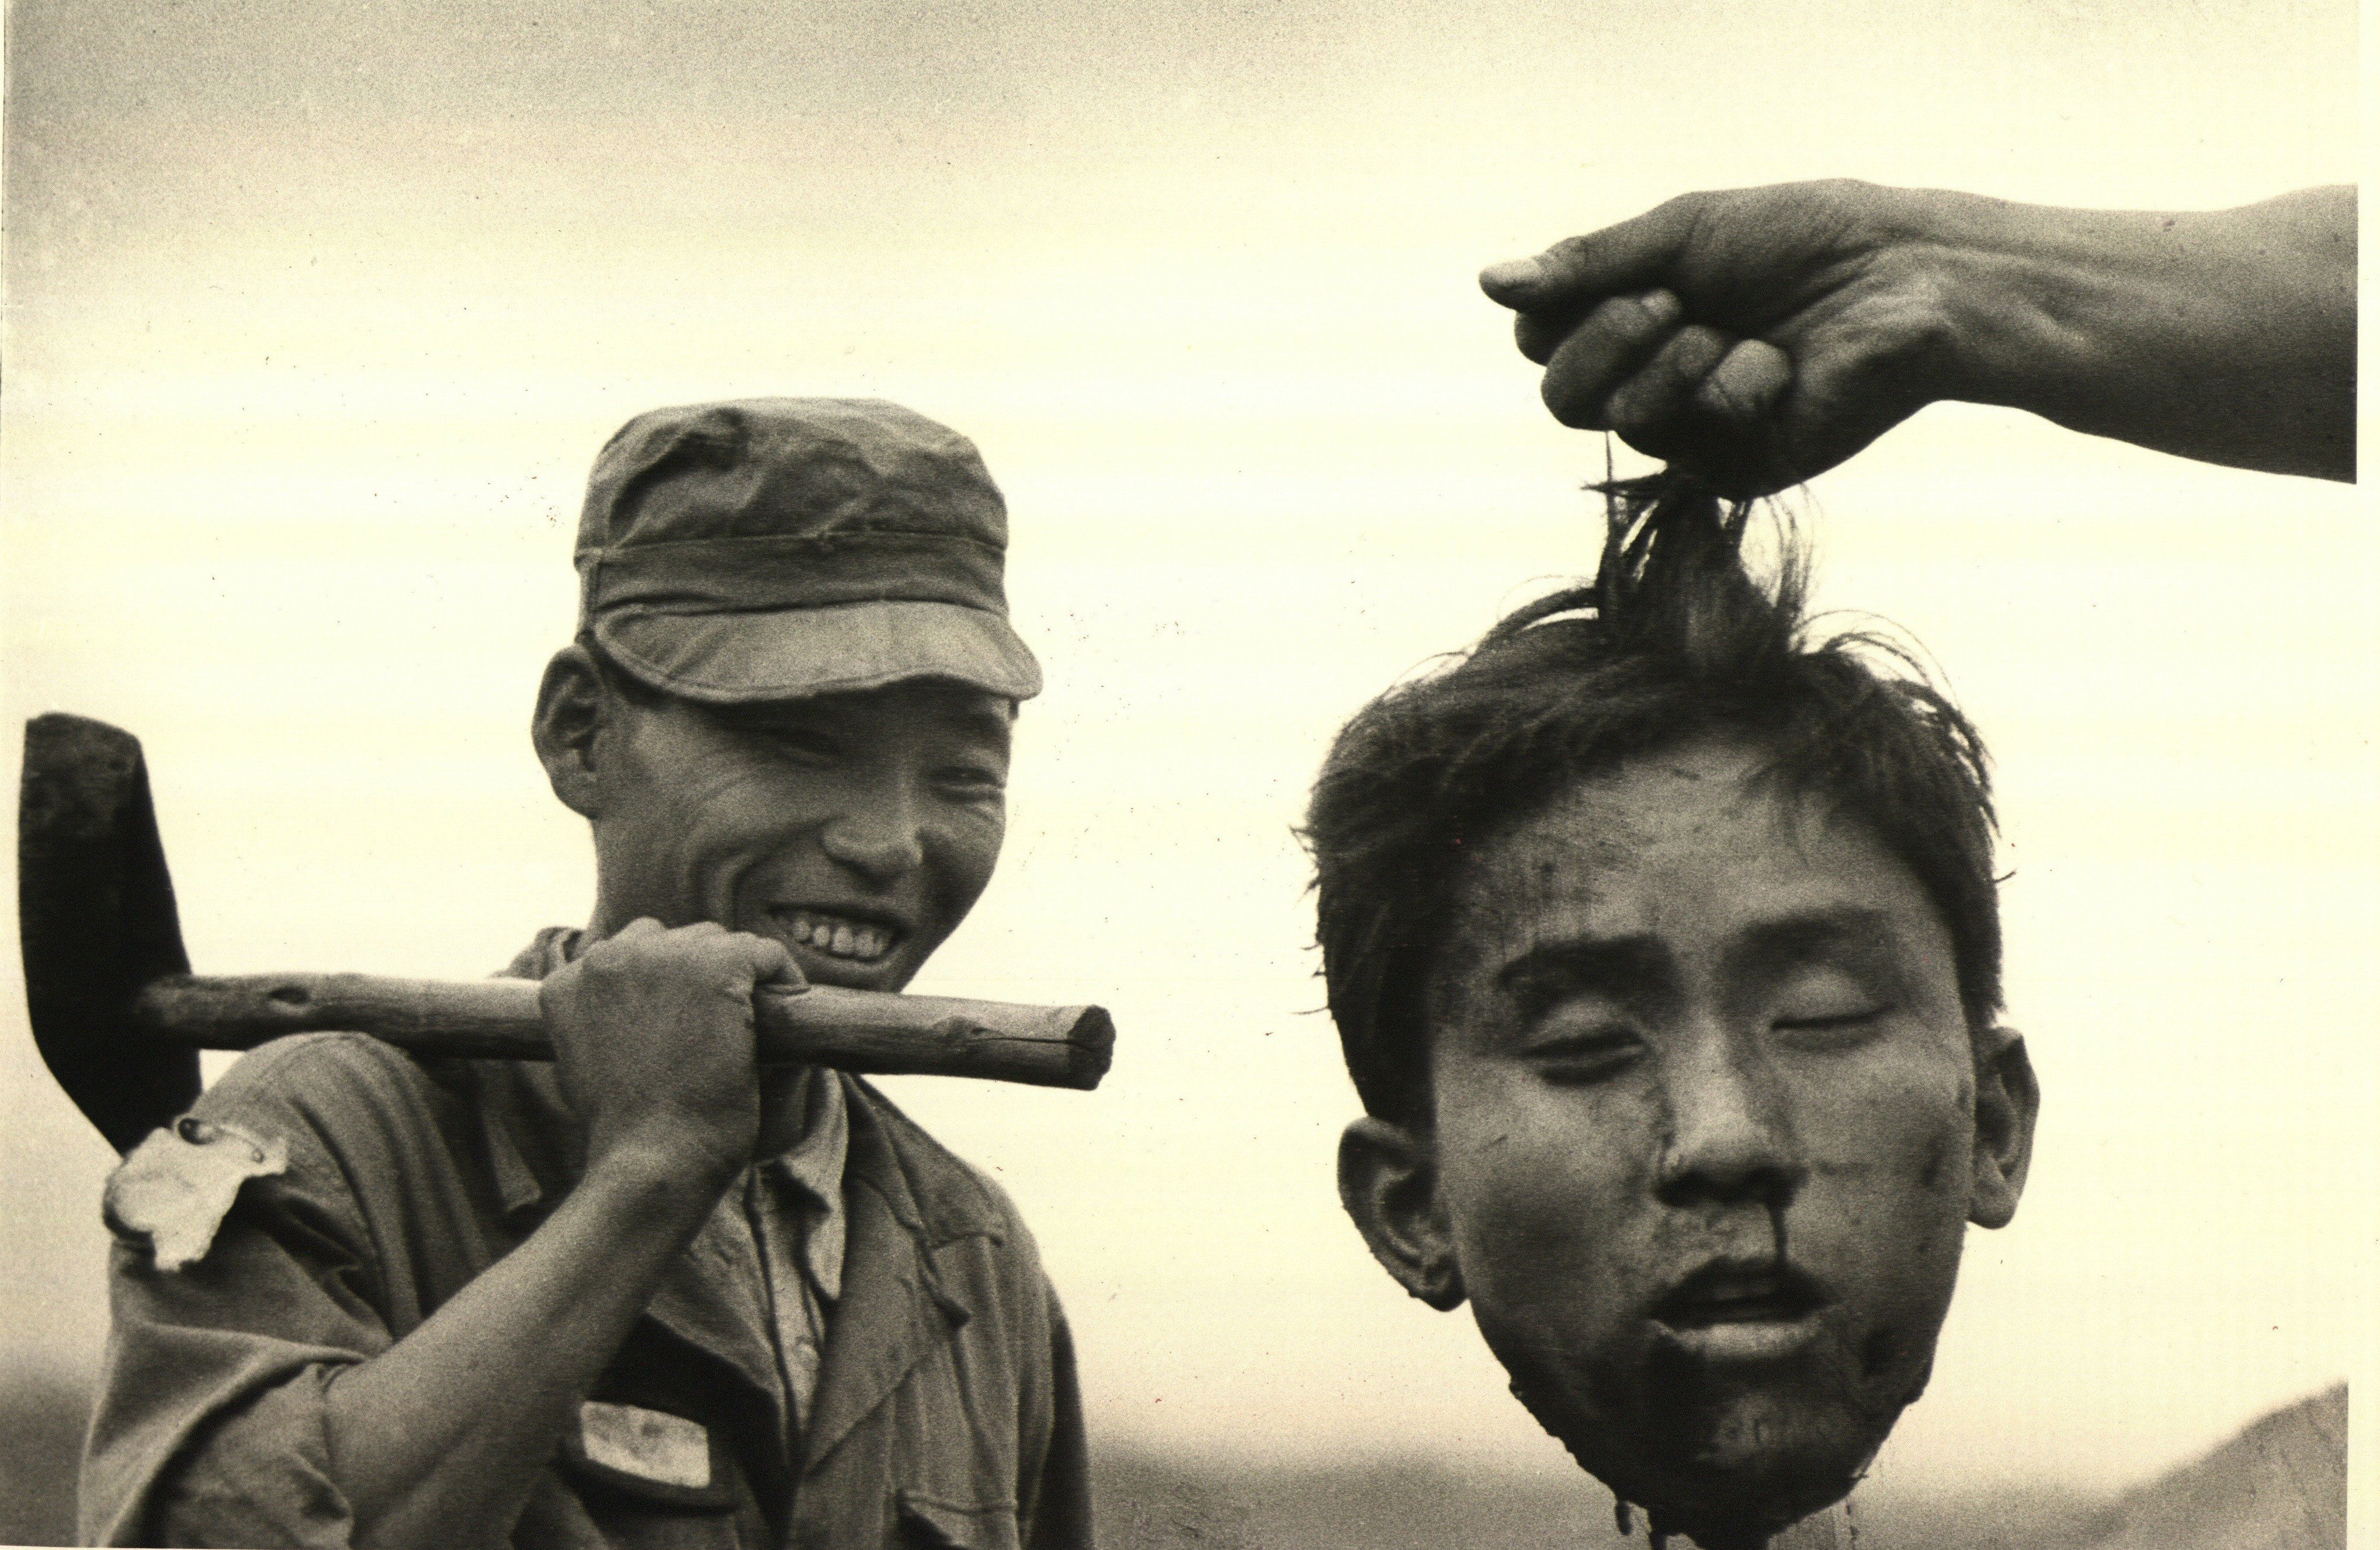 Южнокорейская национальная полиция держит отрезанную голову северокорейского коммуниста, которого они убили, 1951 год. Фотограф Маргарет Бурк-Уайт